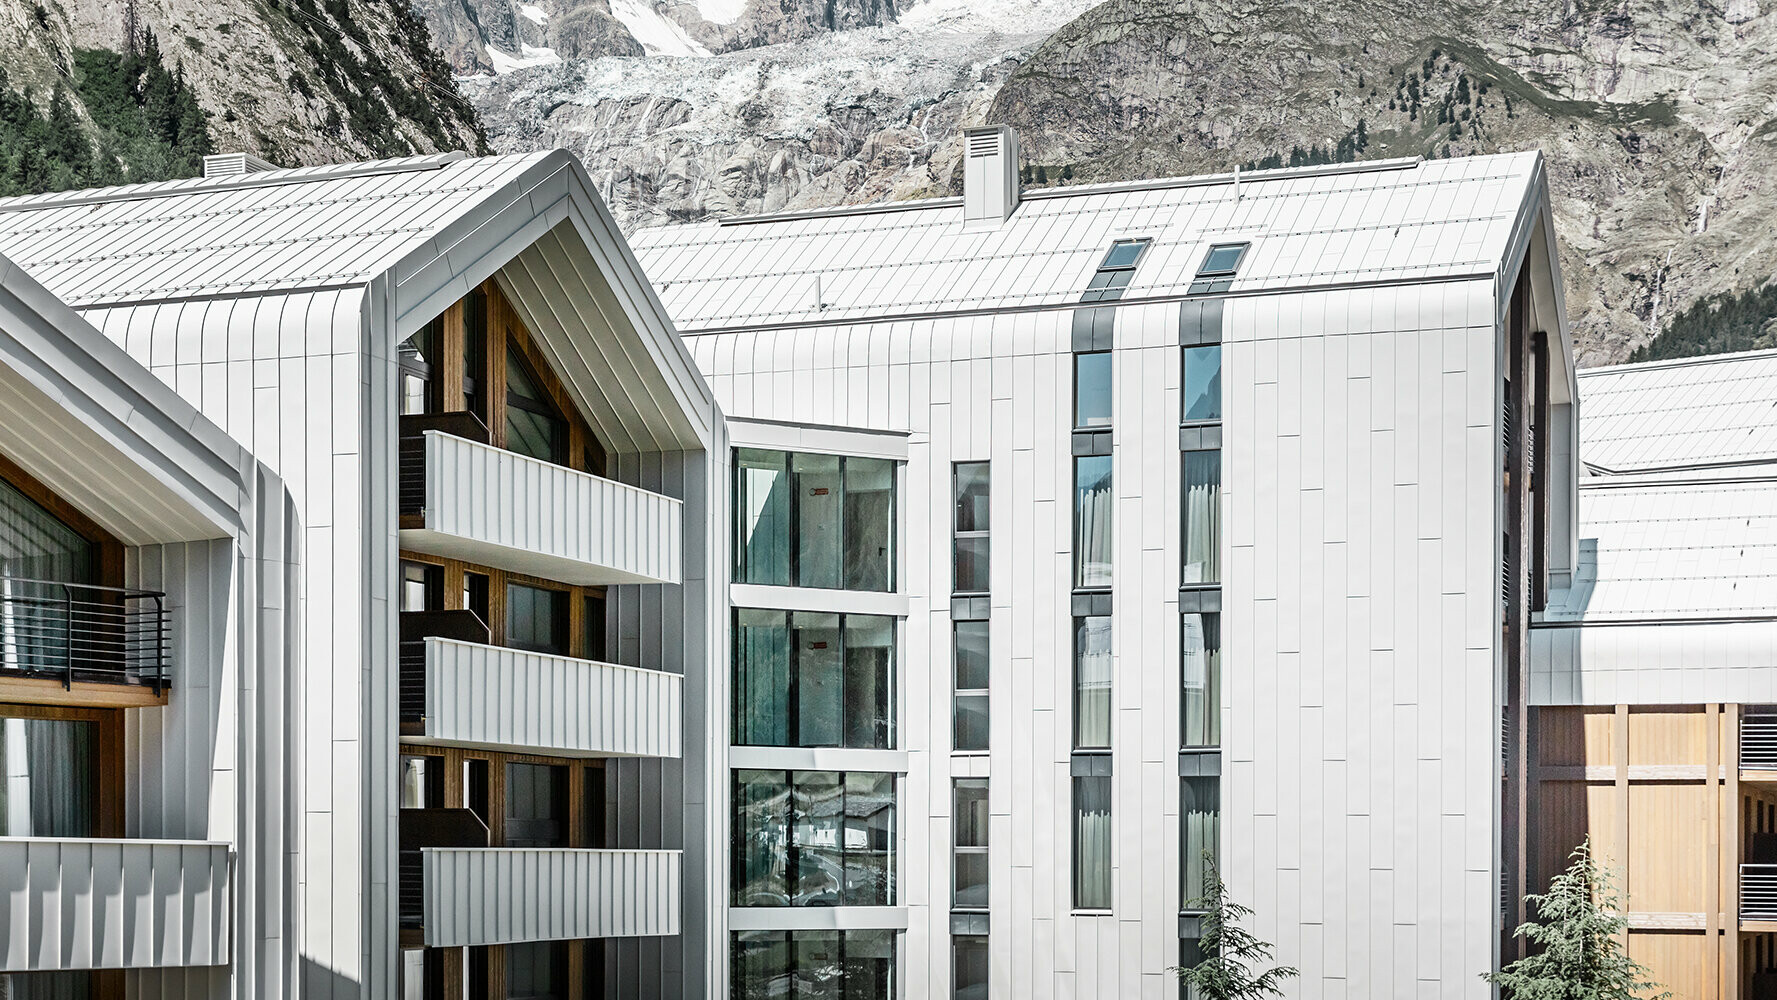 Neugebautes Hotel in Italien mit PREFALZ Dach- und Fassadenverkleidung in den Farben Weiß und Anthrazit